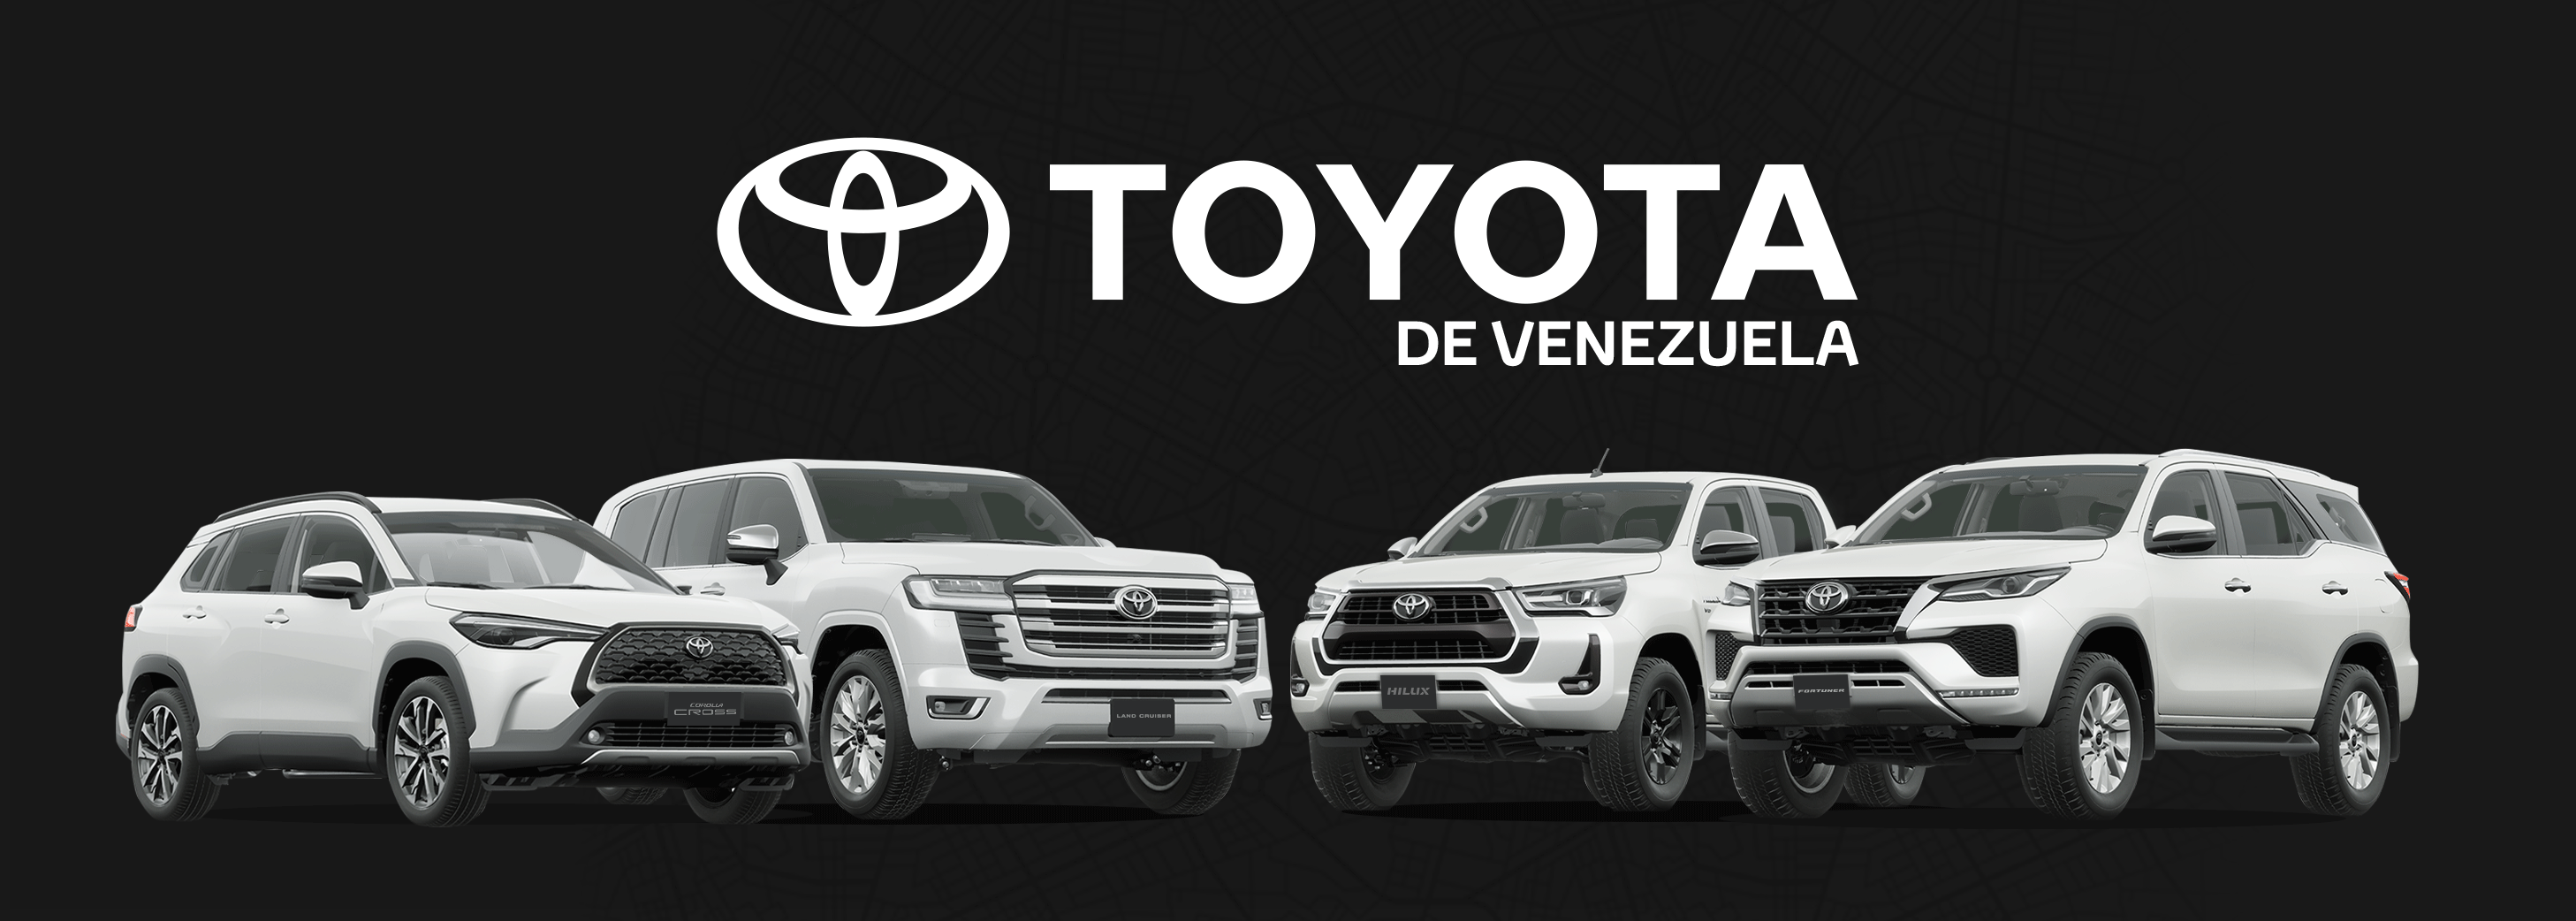 Toyota en Venezuela | Agendar una Cita | Toyota Venezuela